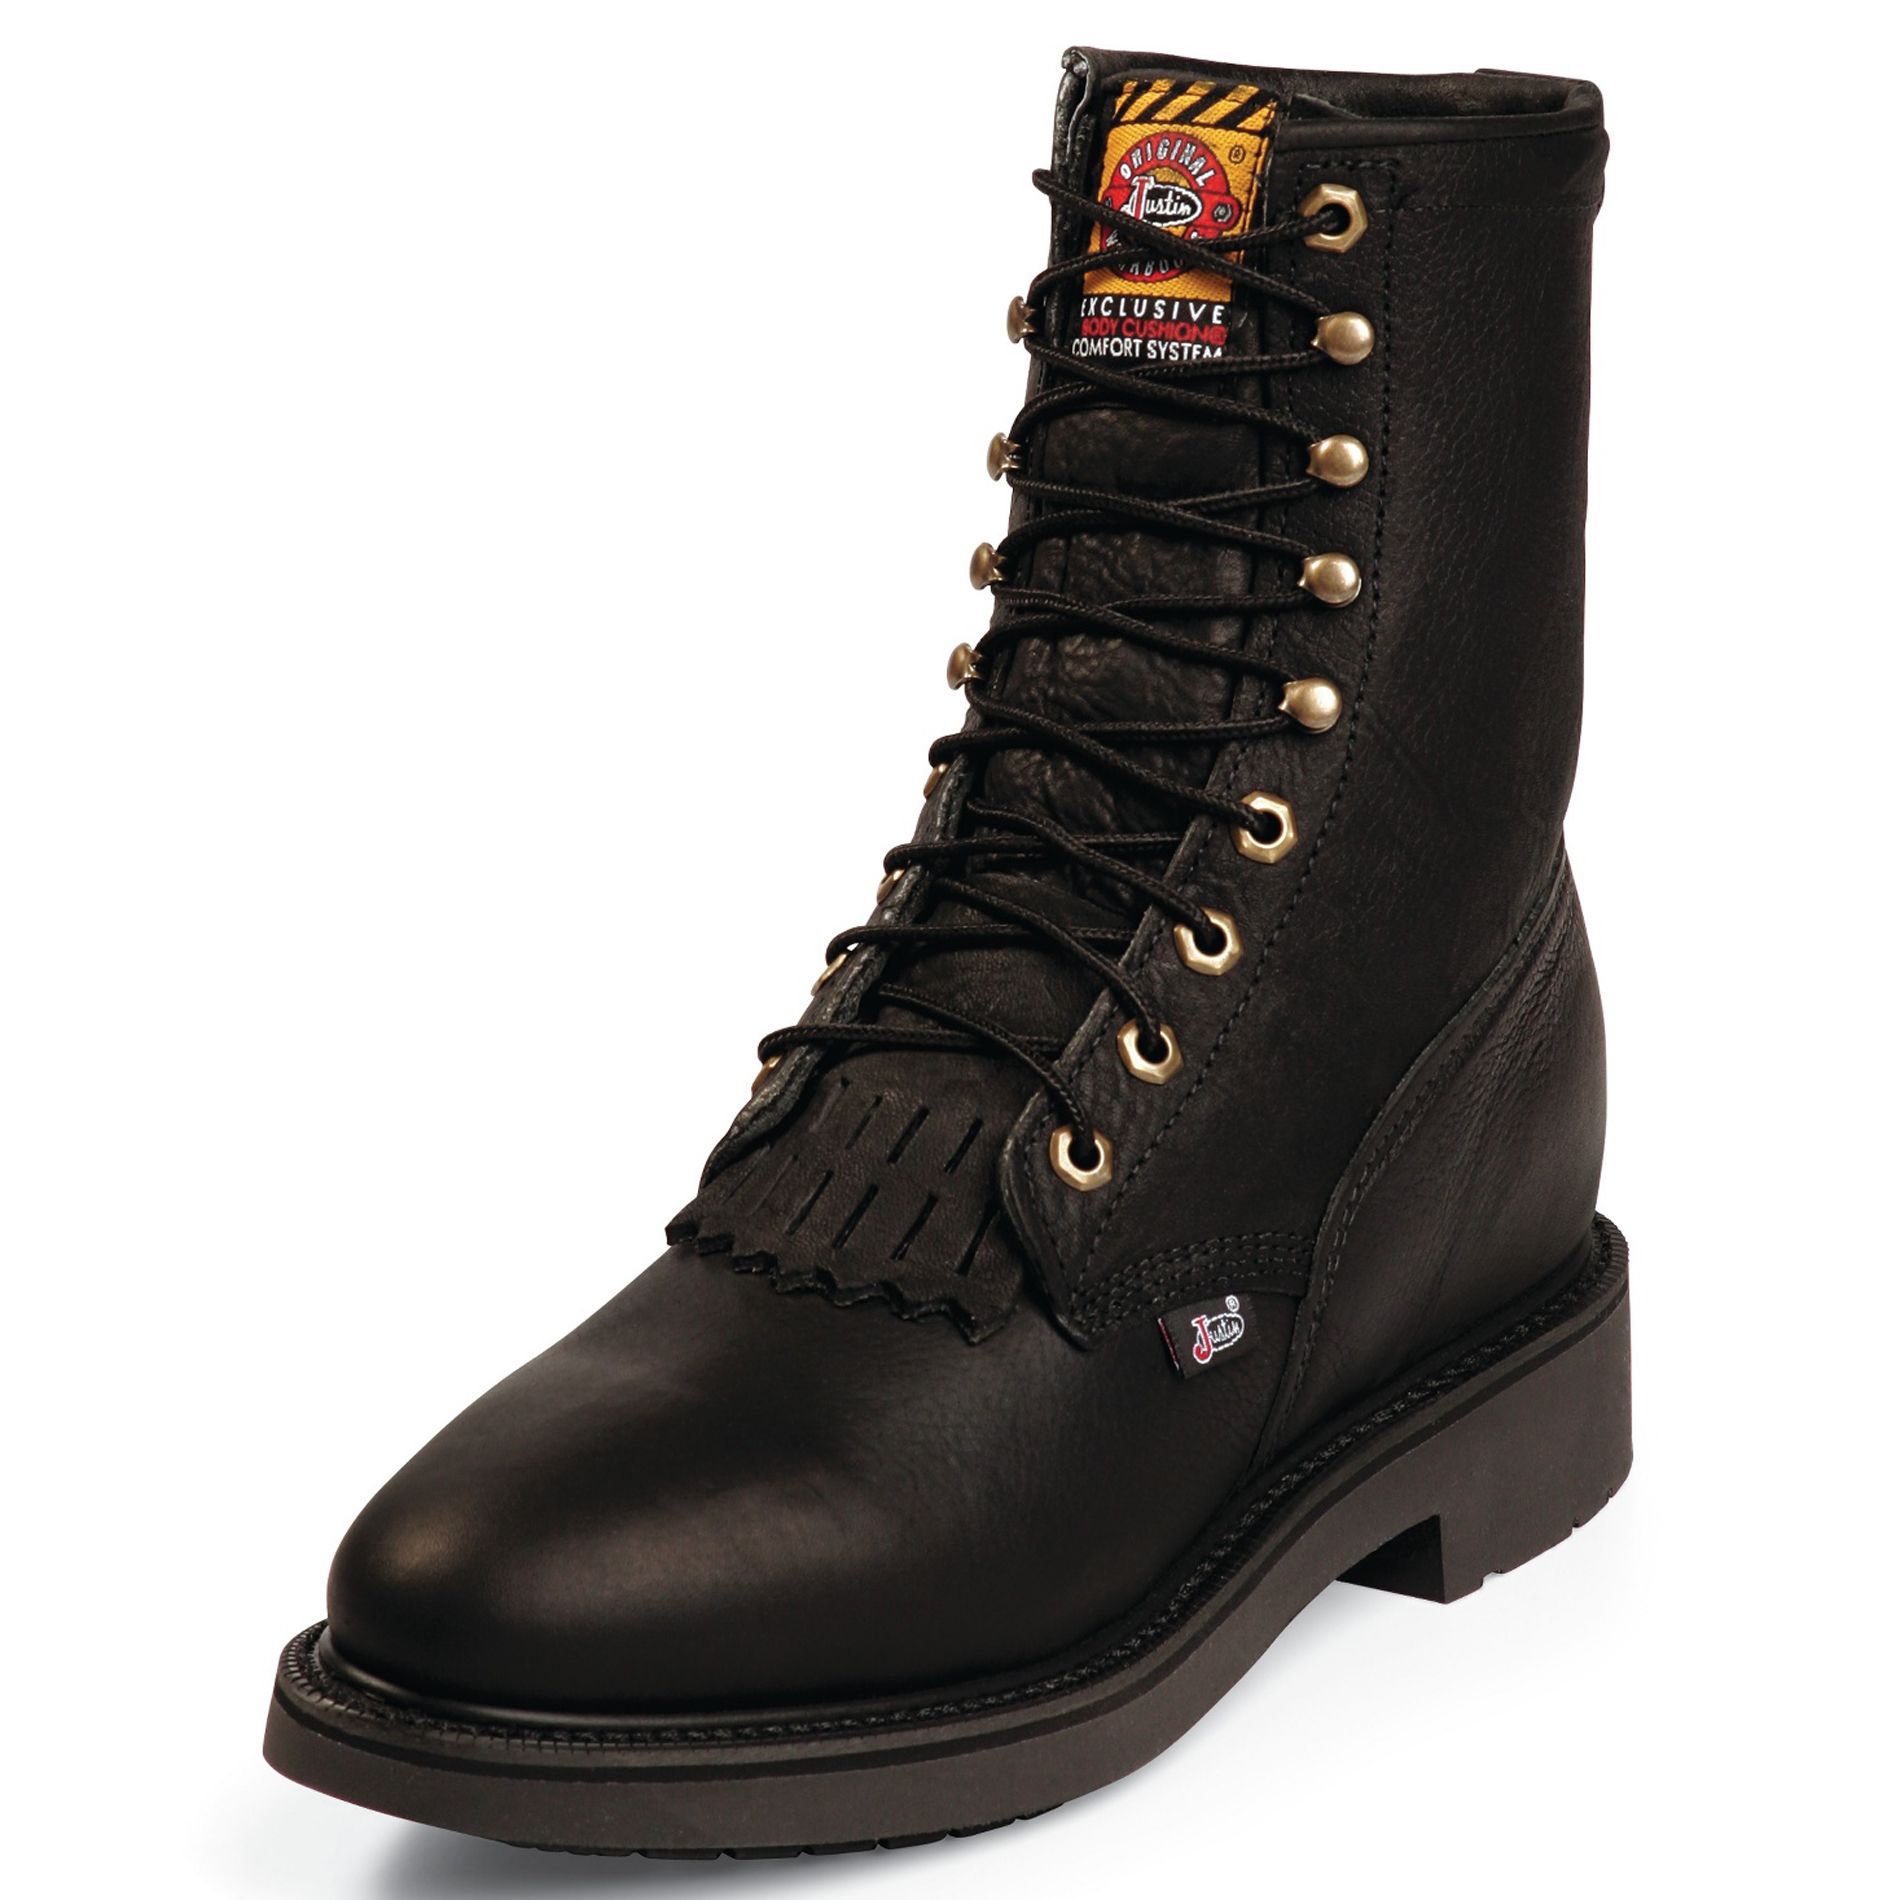 Men's 763 8" Work Boot - Black